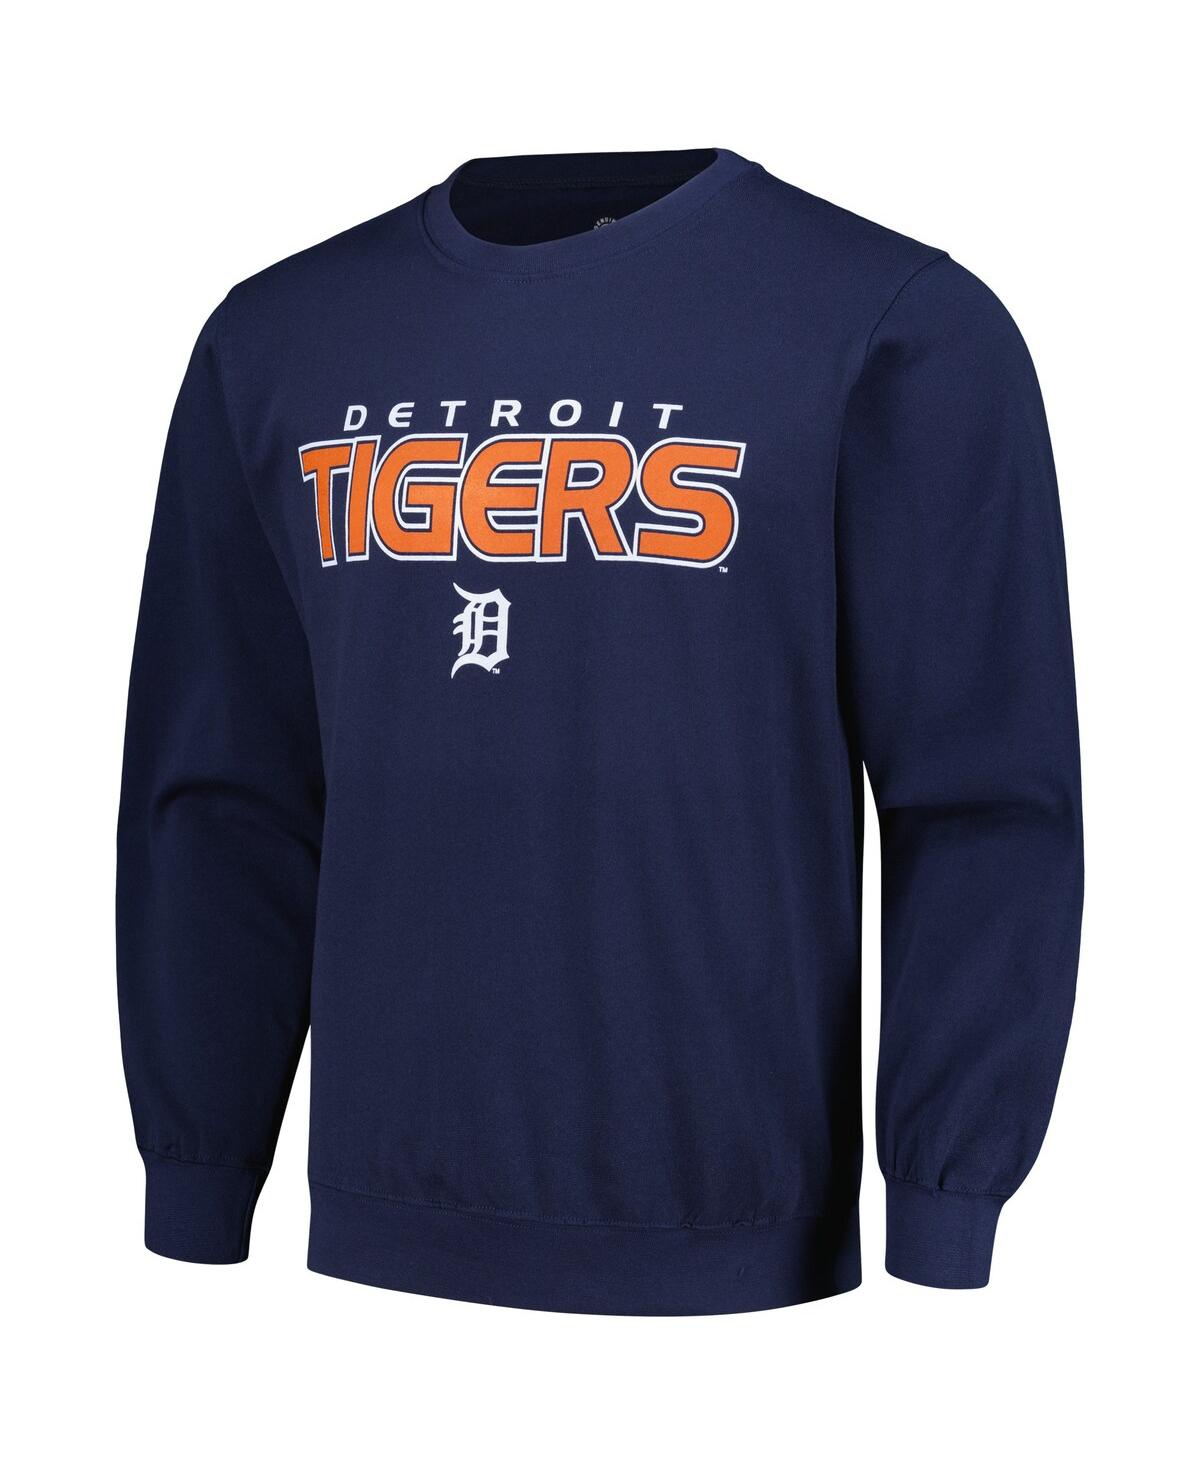 Shop Stitches Men's  Navy Detroit Tigers Pullover Sweatshirt